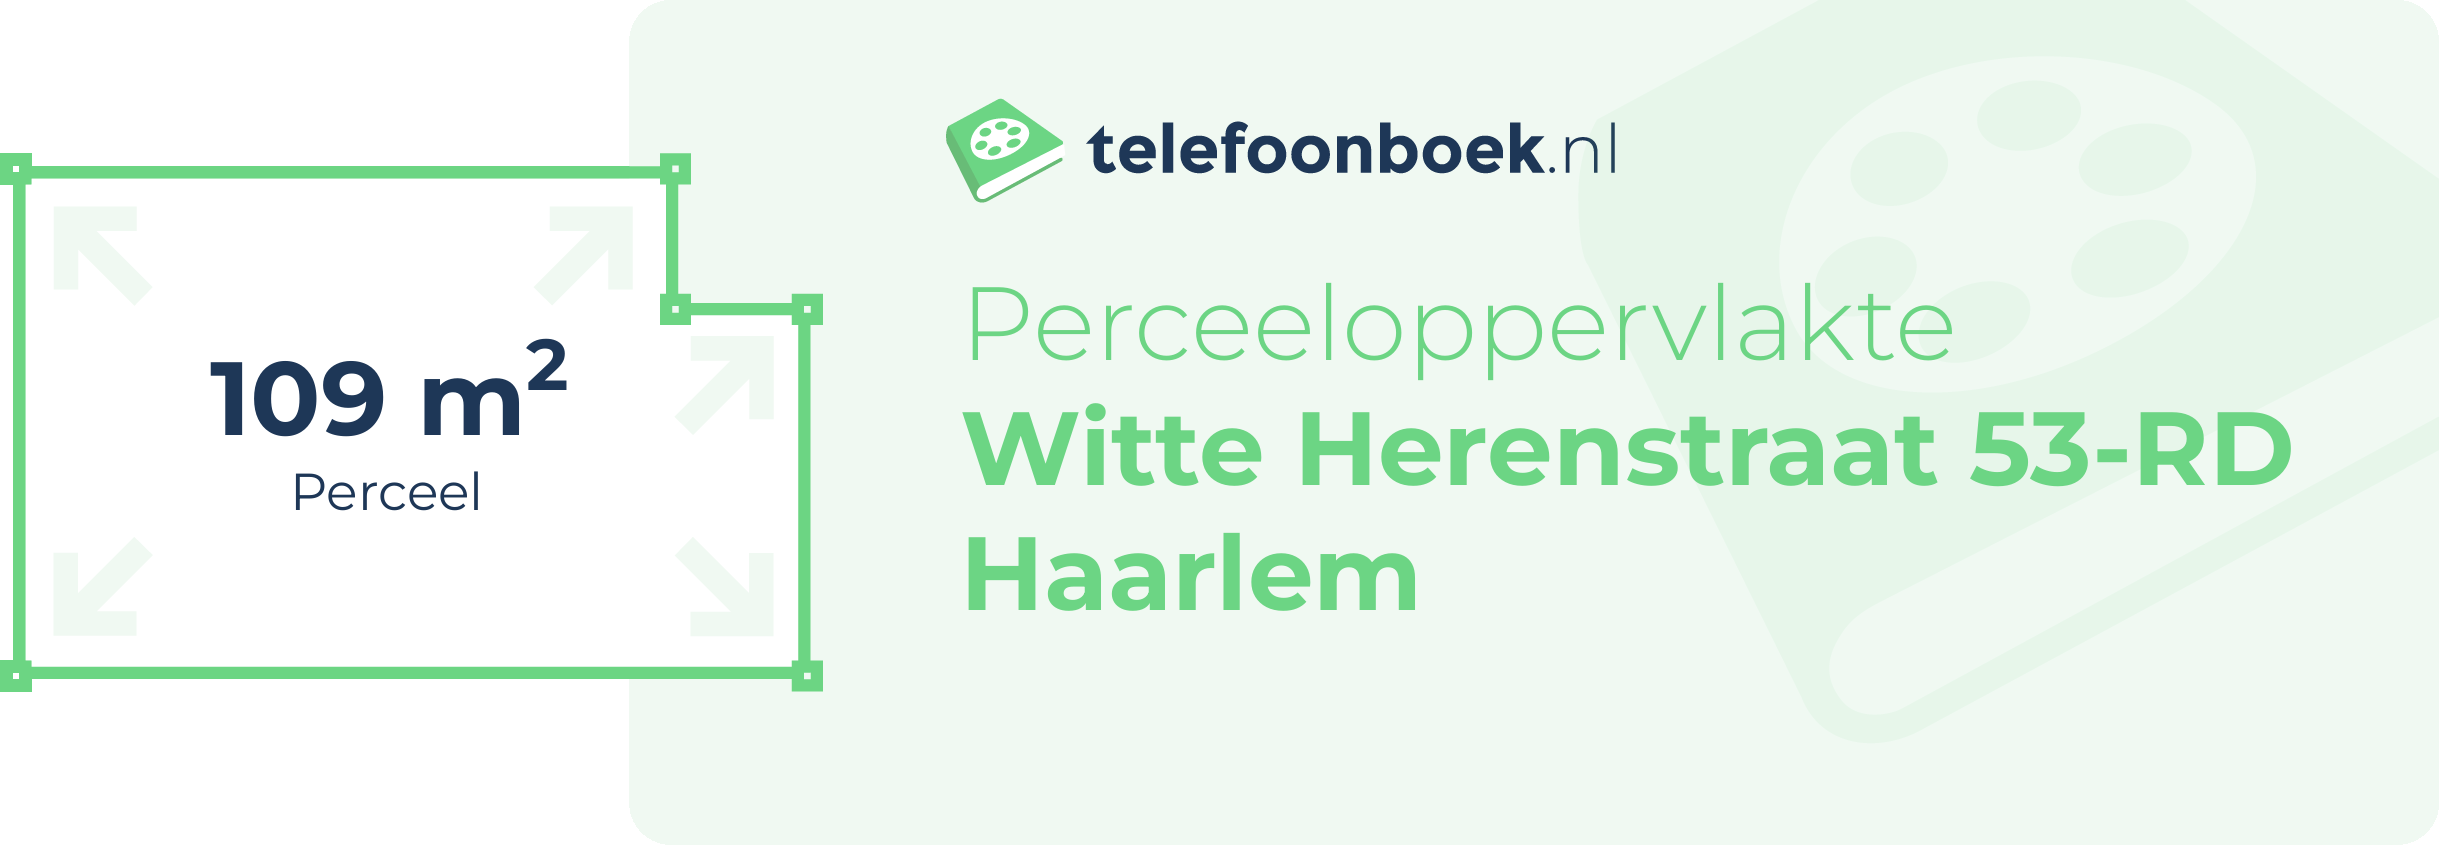 Perceeloppervlakte Witte Herenstraat 53-RD Haarlem